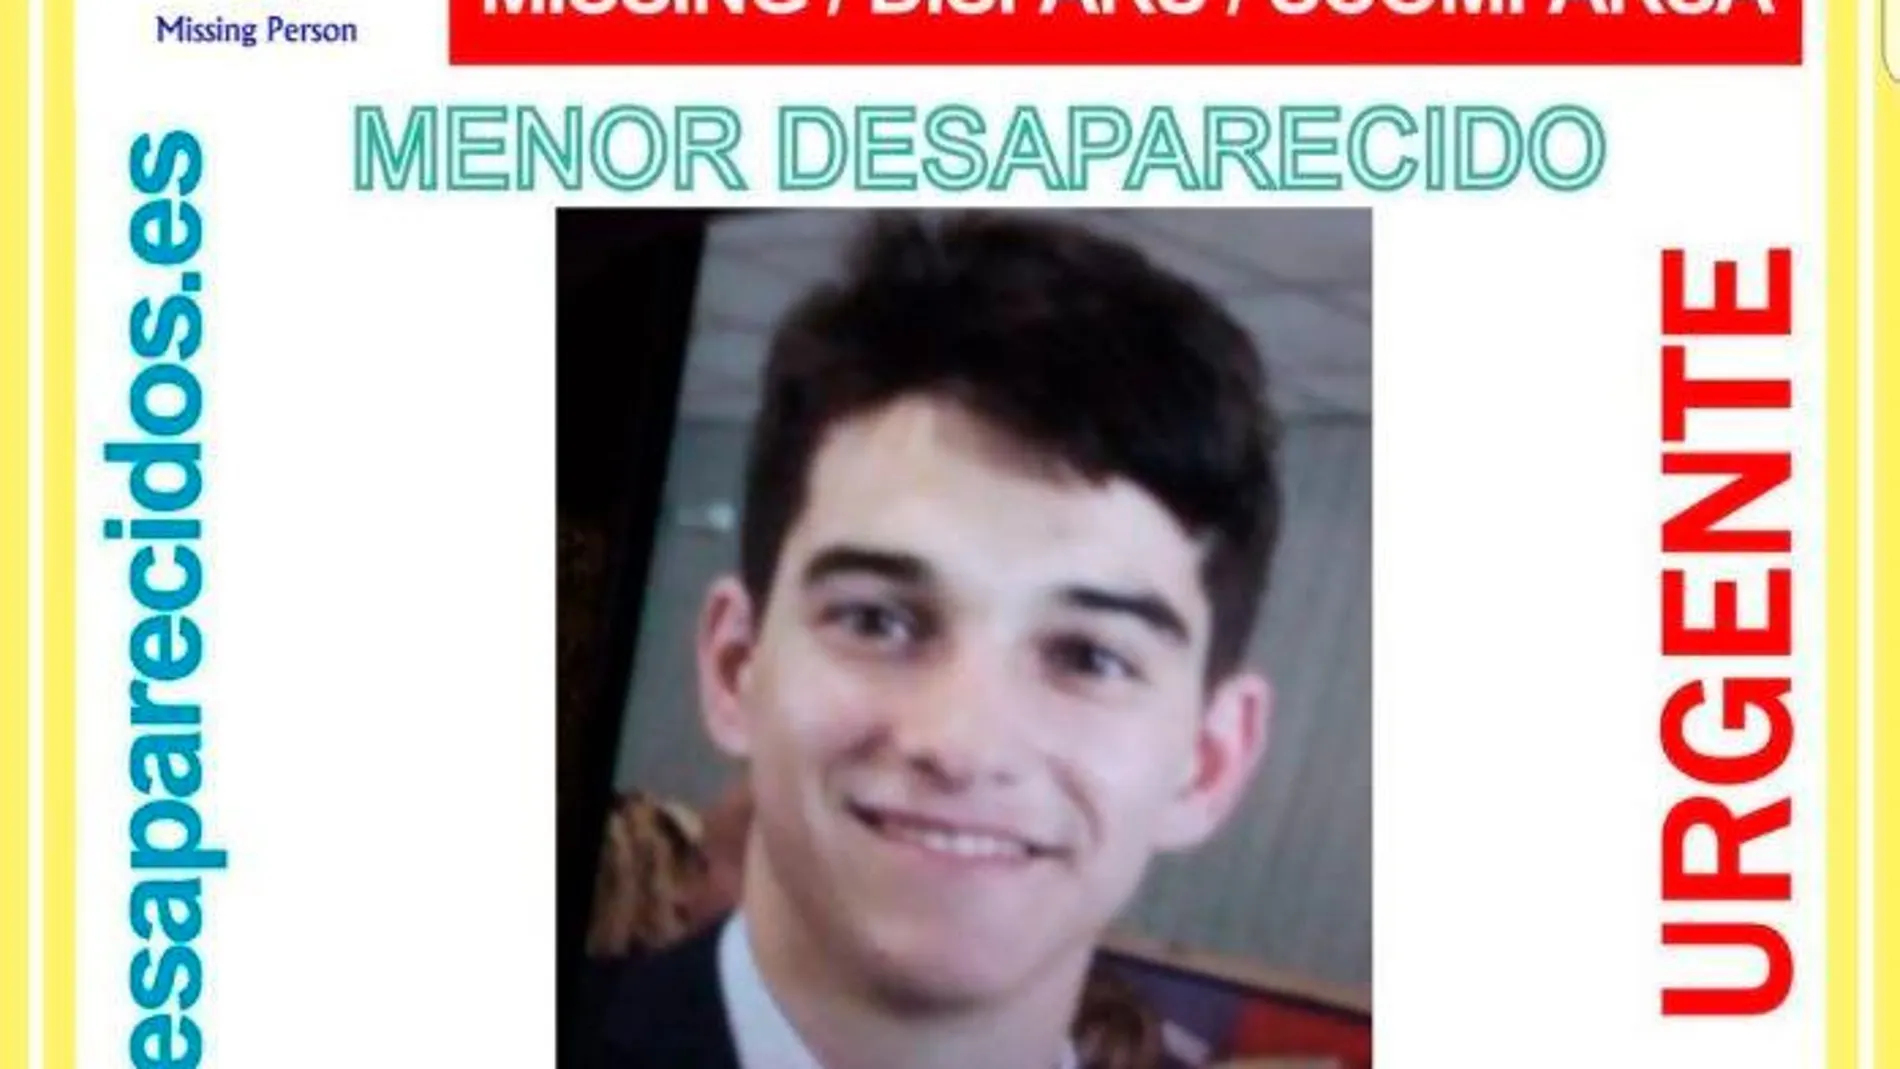 Imagen del joven desaparecido /SOS Desaparecidos